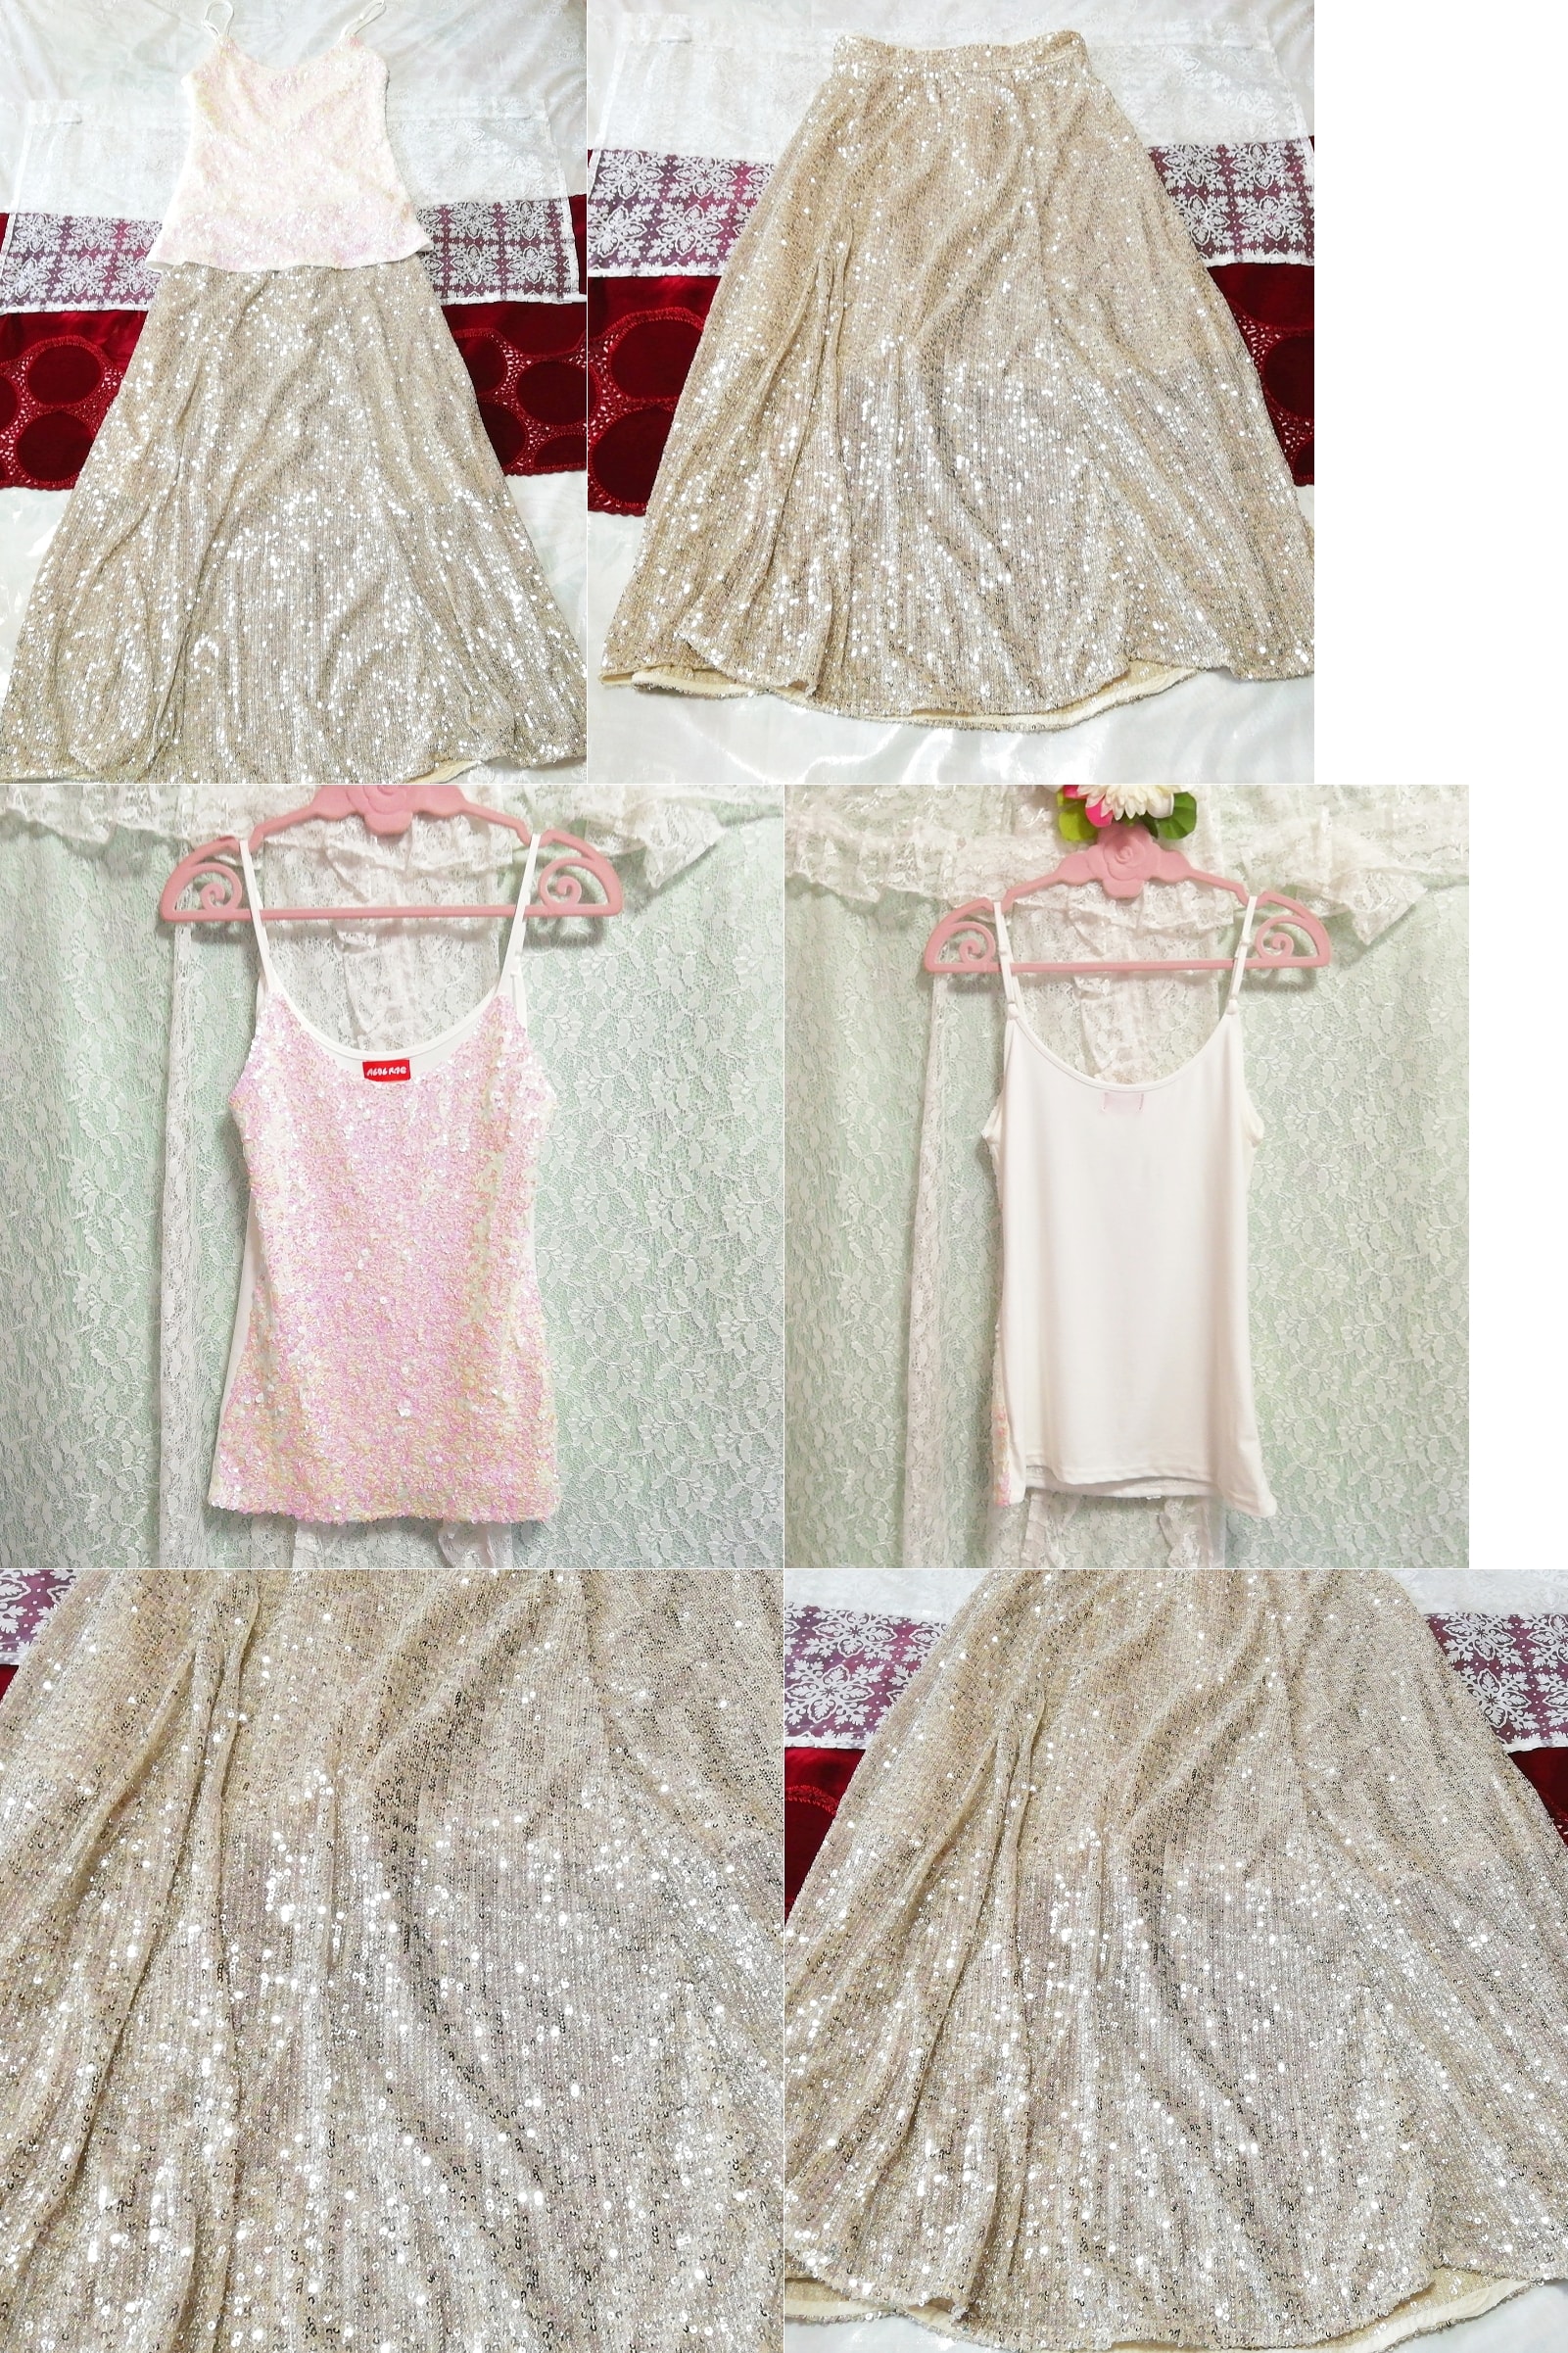 白ピンクキラキラキャミソール ネグリジェ 亜麻色マキシスカートドレス 2P White pink glitter camisole negligee flax maxi skirt dress, ファッション, レディースファッション, ナイトウエア、パジャマ